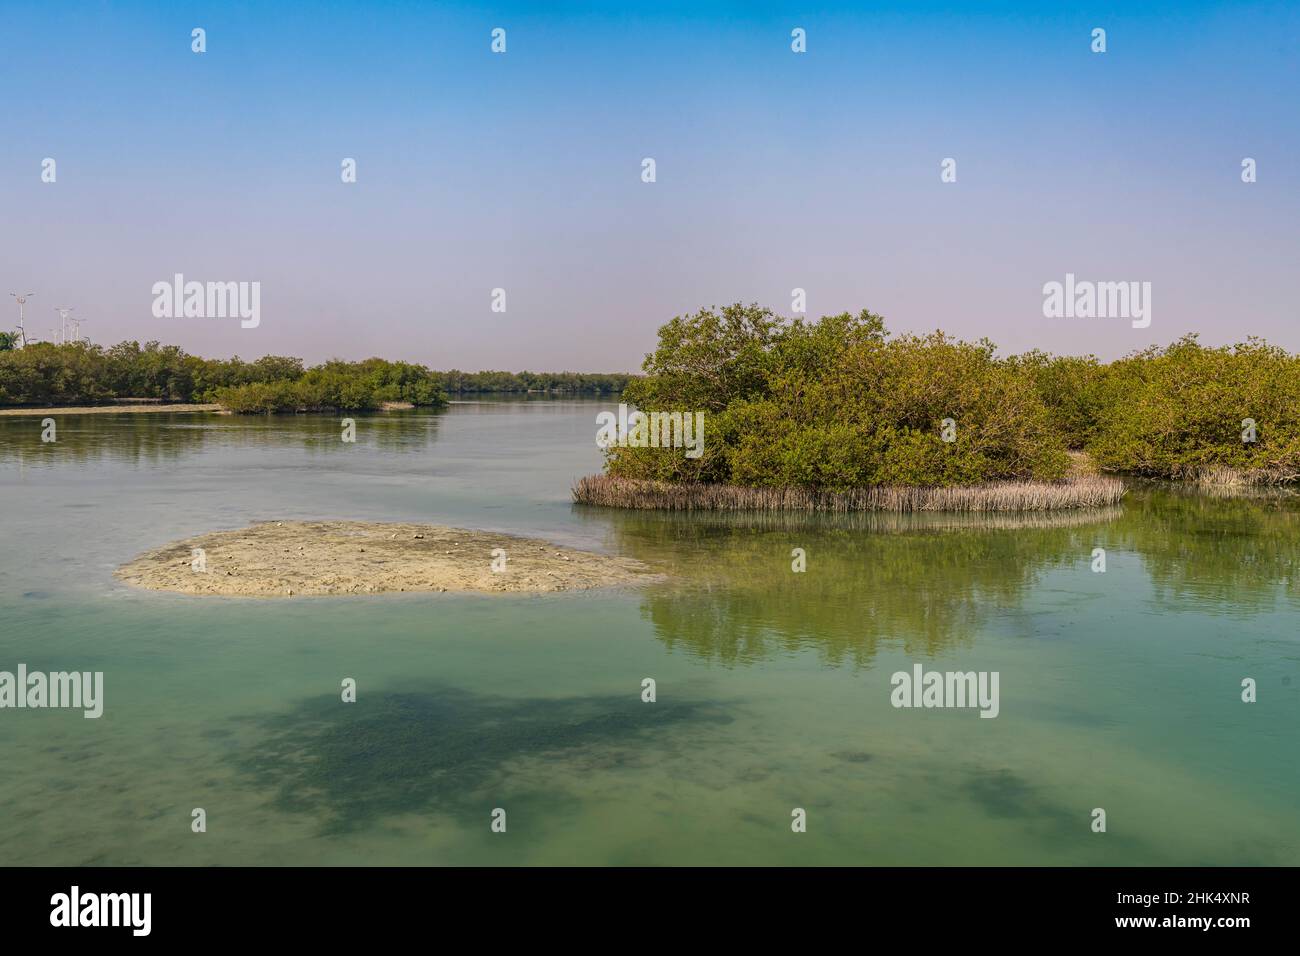 Mangroves, îles Farasan, Royaume d'Arabie saoudite, Moyen-Orient Banque D'Images